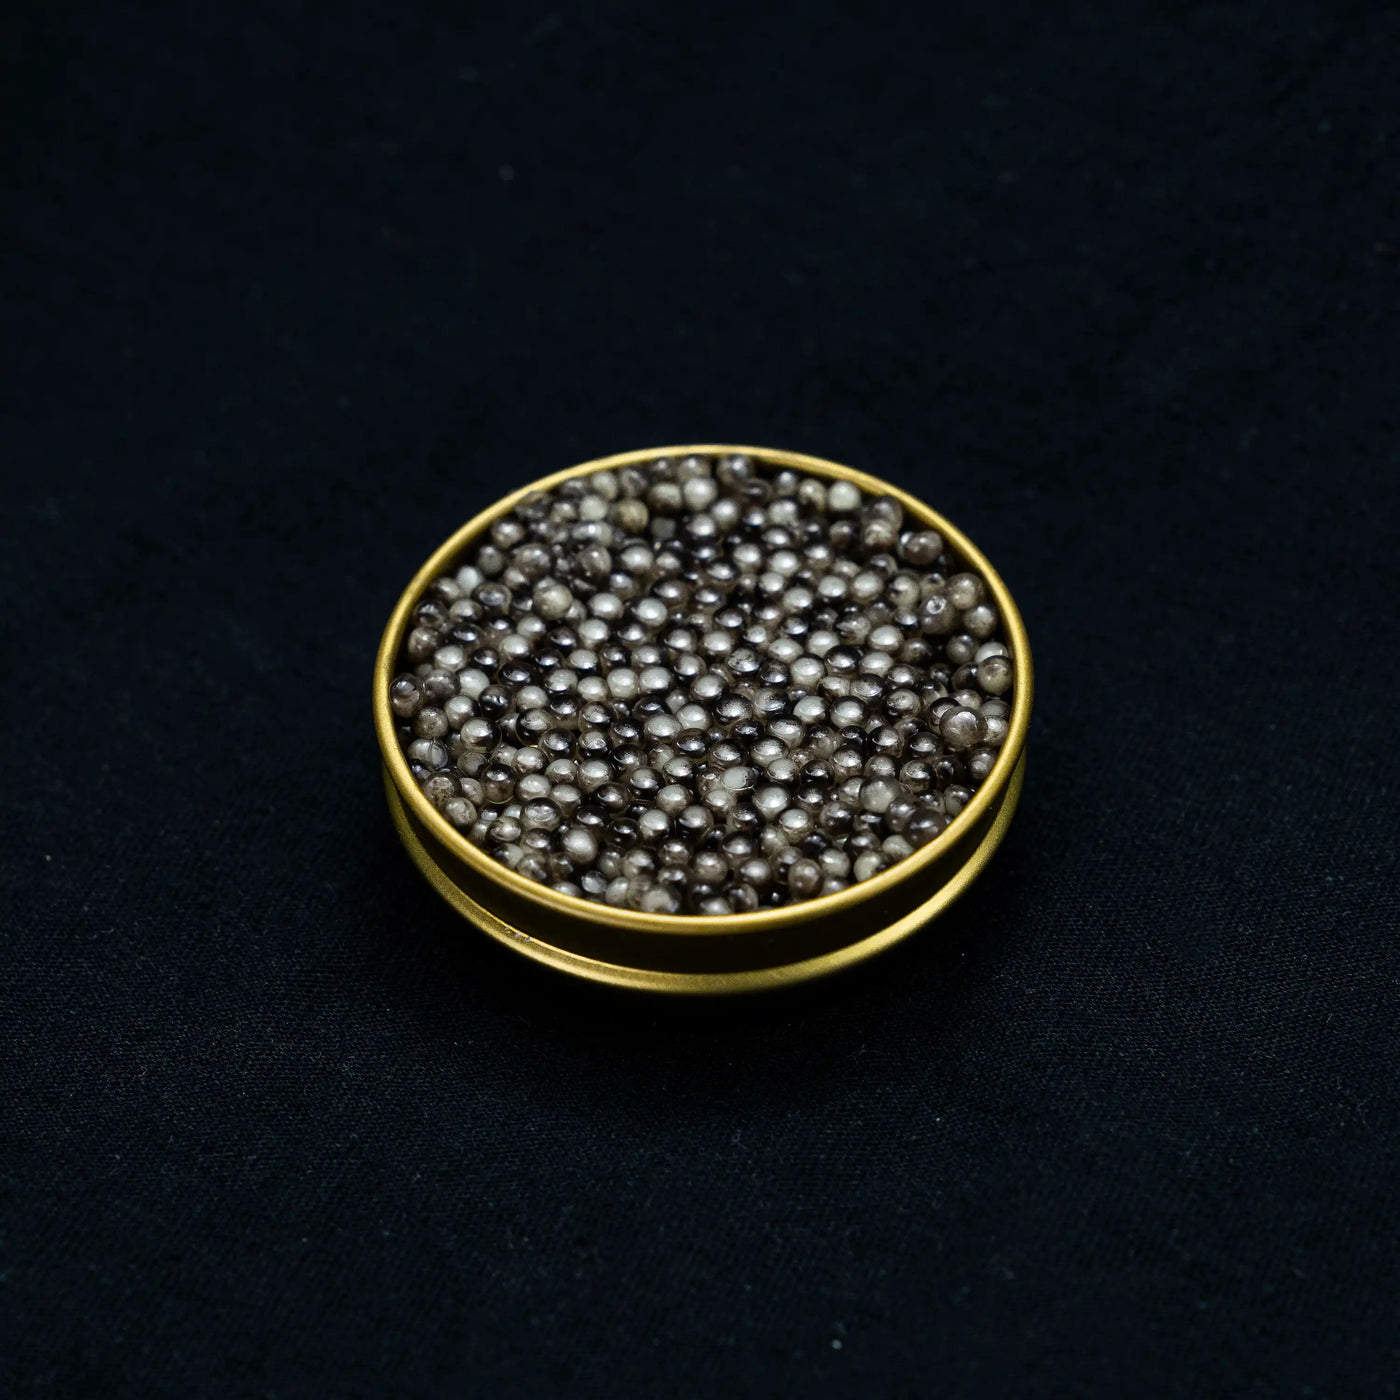 Noir Velvet Obsidian Beluga Caviar X 9 Mile Vodka 0.7l